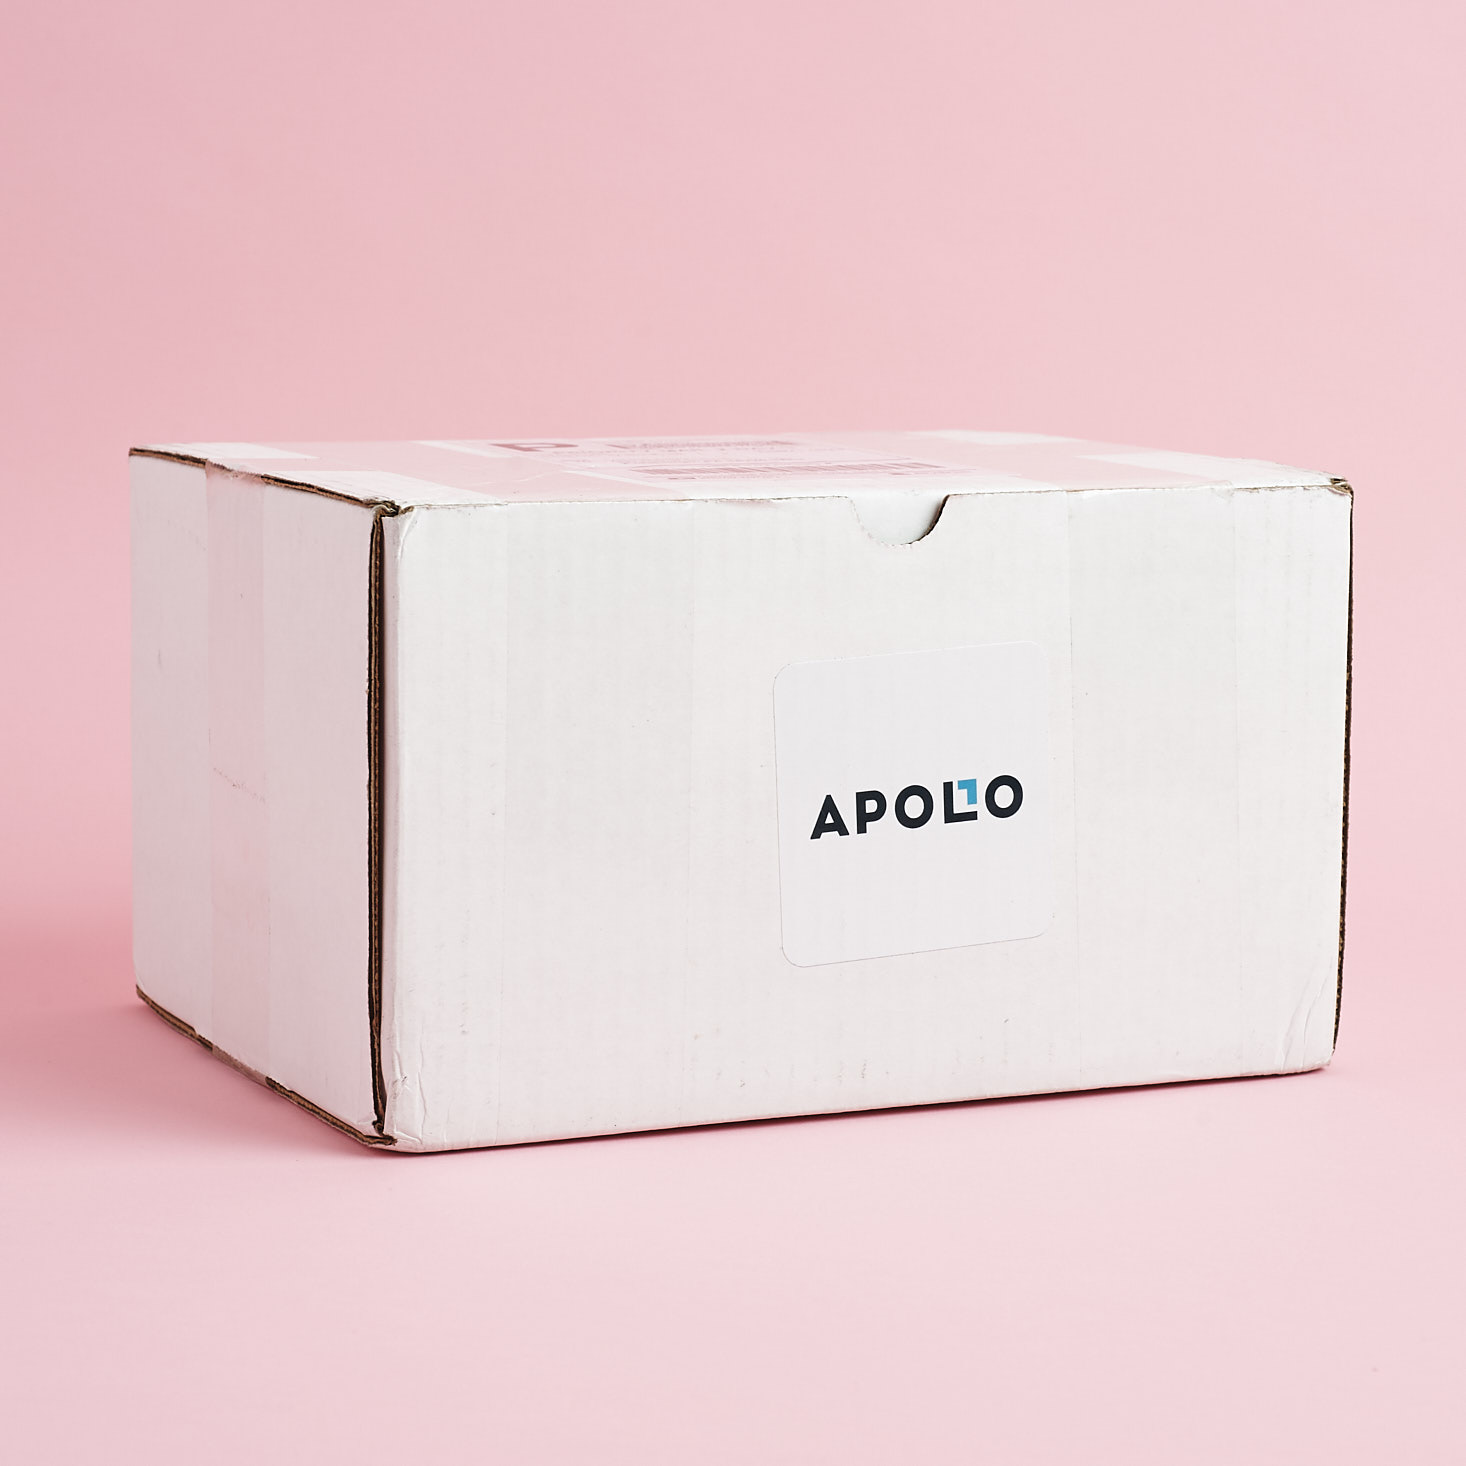 Apollo Surprise Box Review + Coupon – September 2018